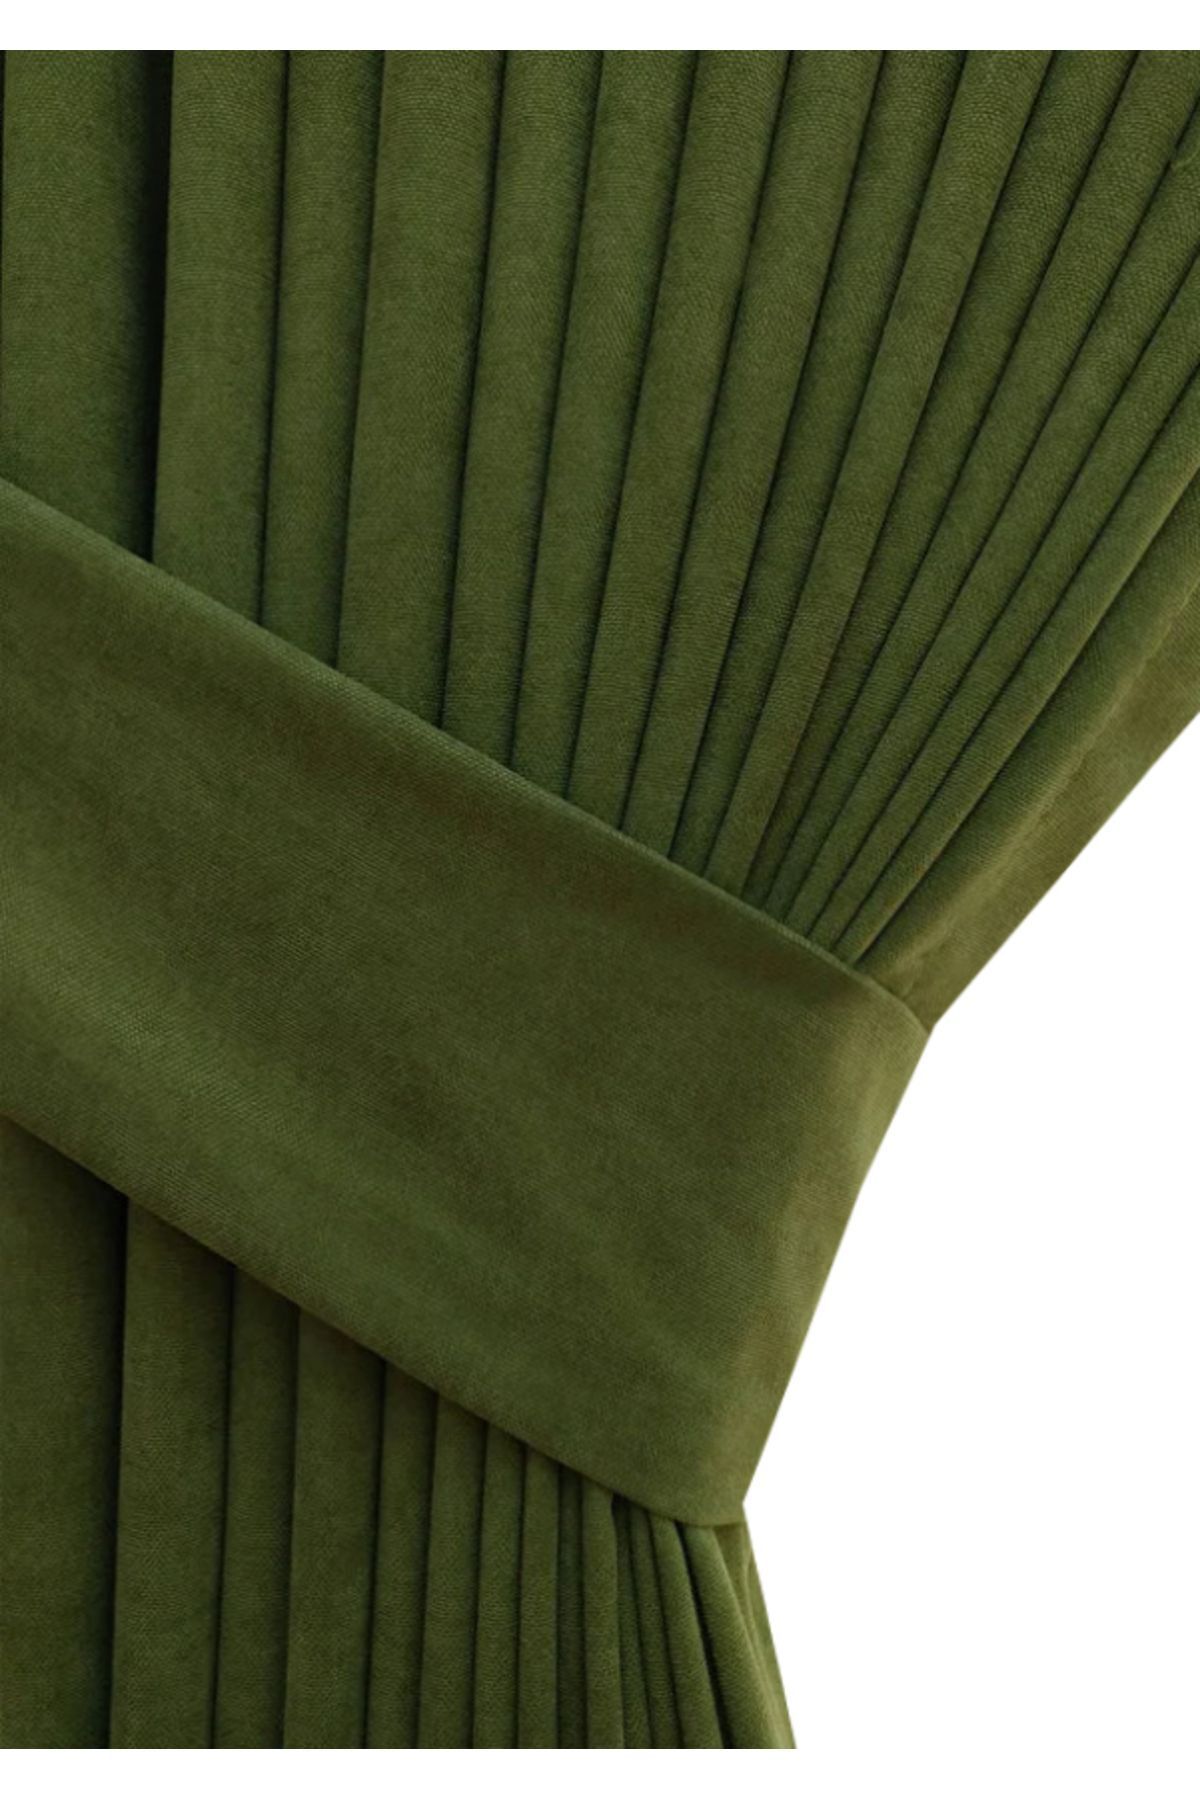 Evdepo Home Taç Petek Dokulu Çimen Yeşili Düz Renk 1/2 Seyrek Pileli Soft Fon Perde, Tek Kanat